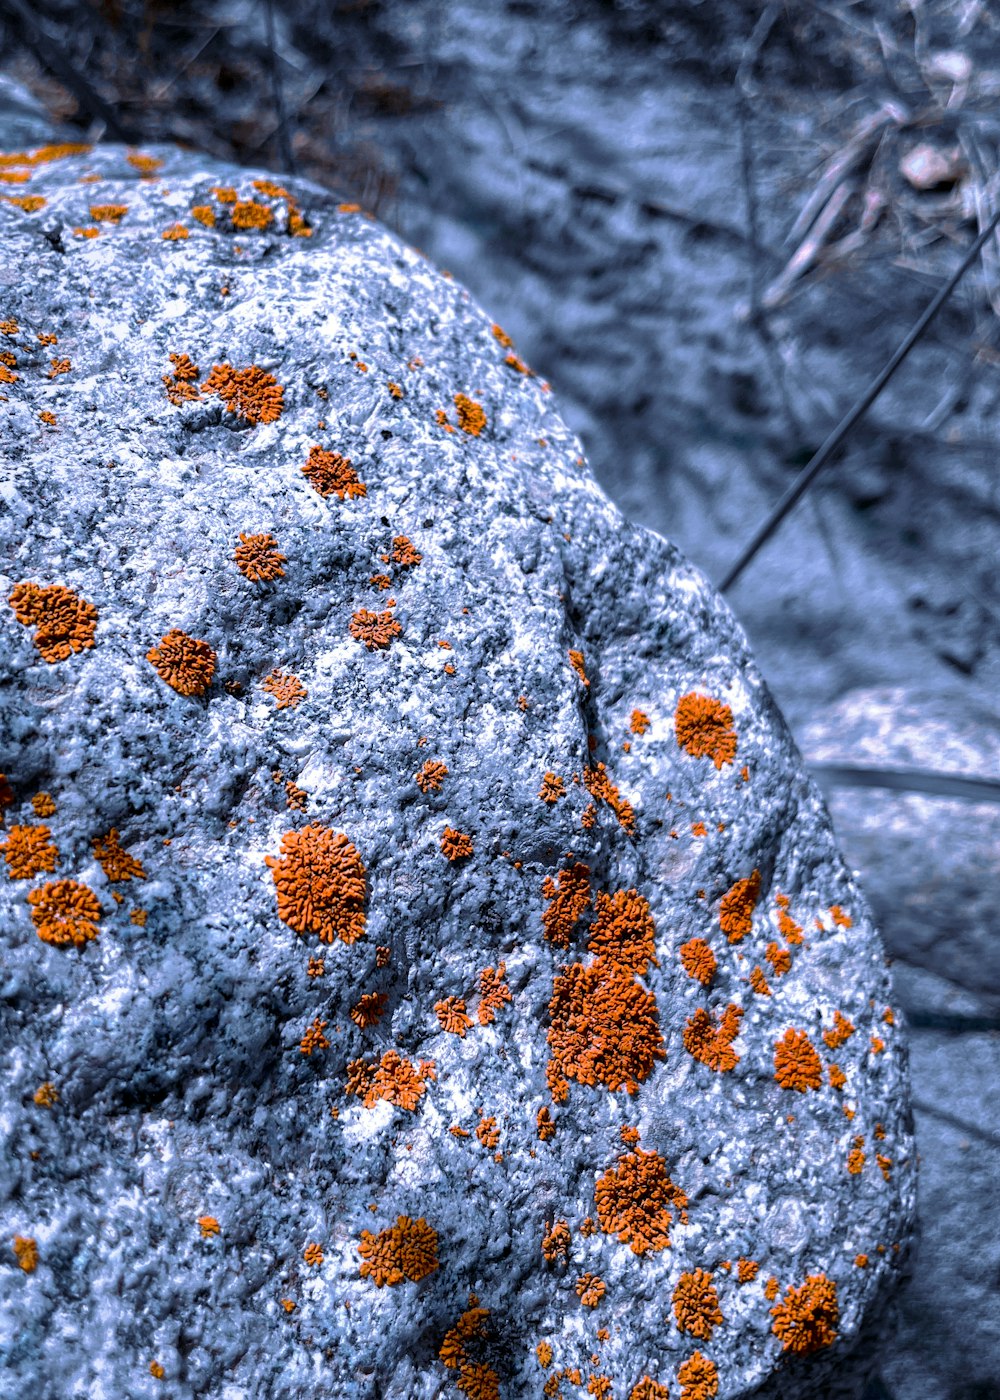 a rock covered in orange and white lichen